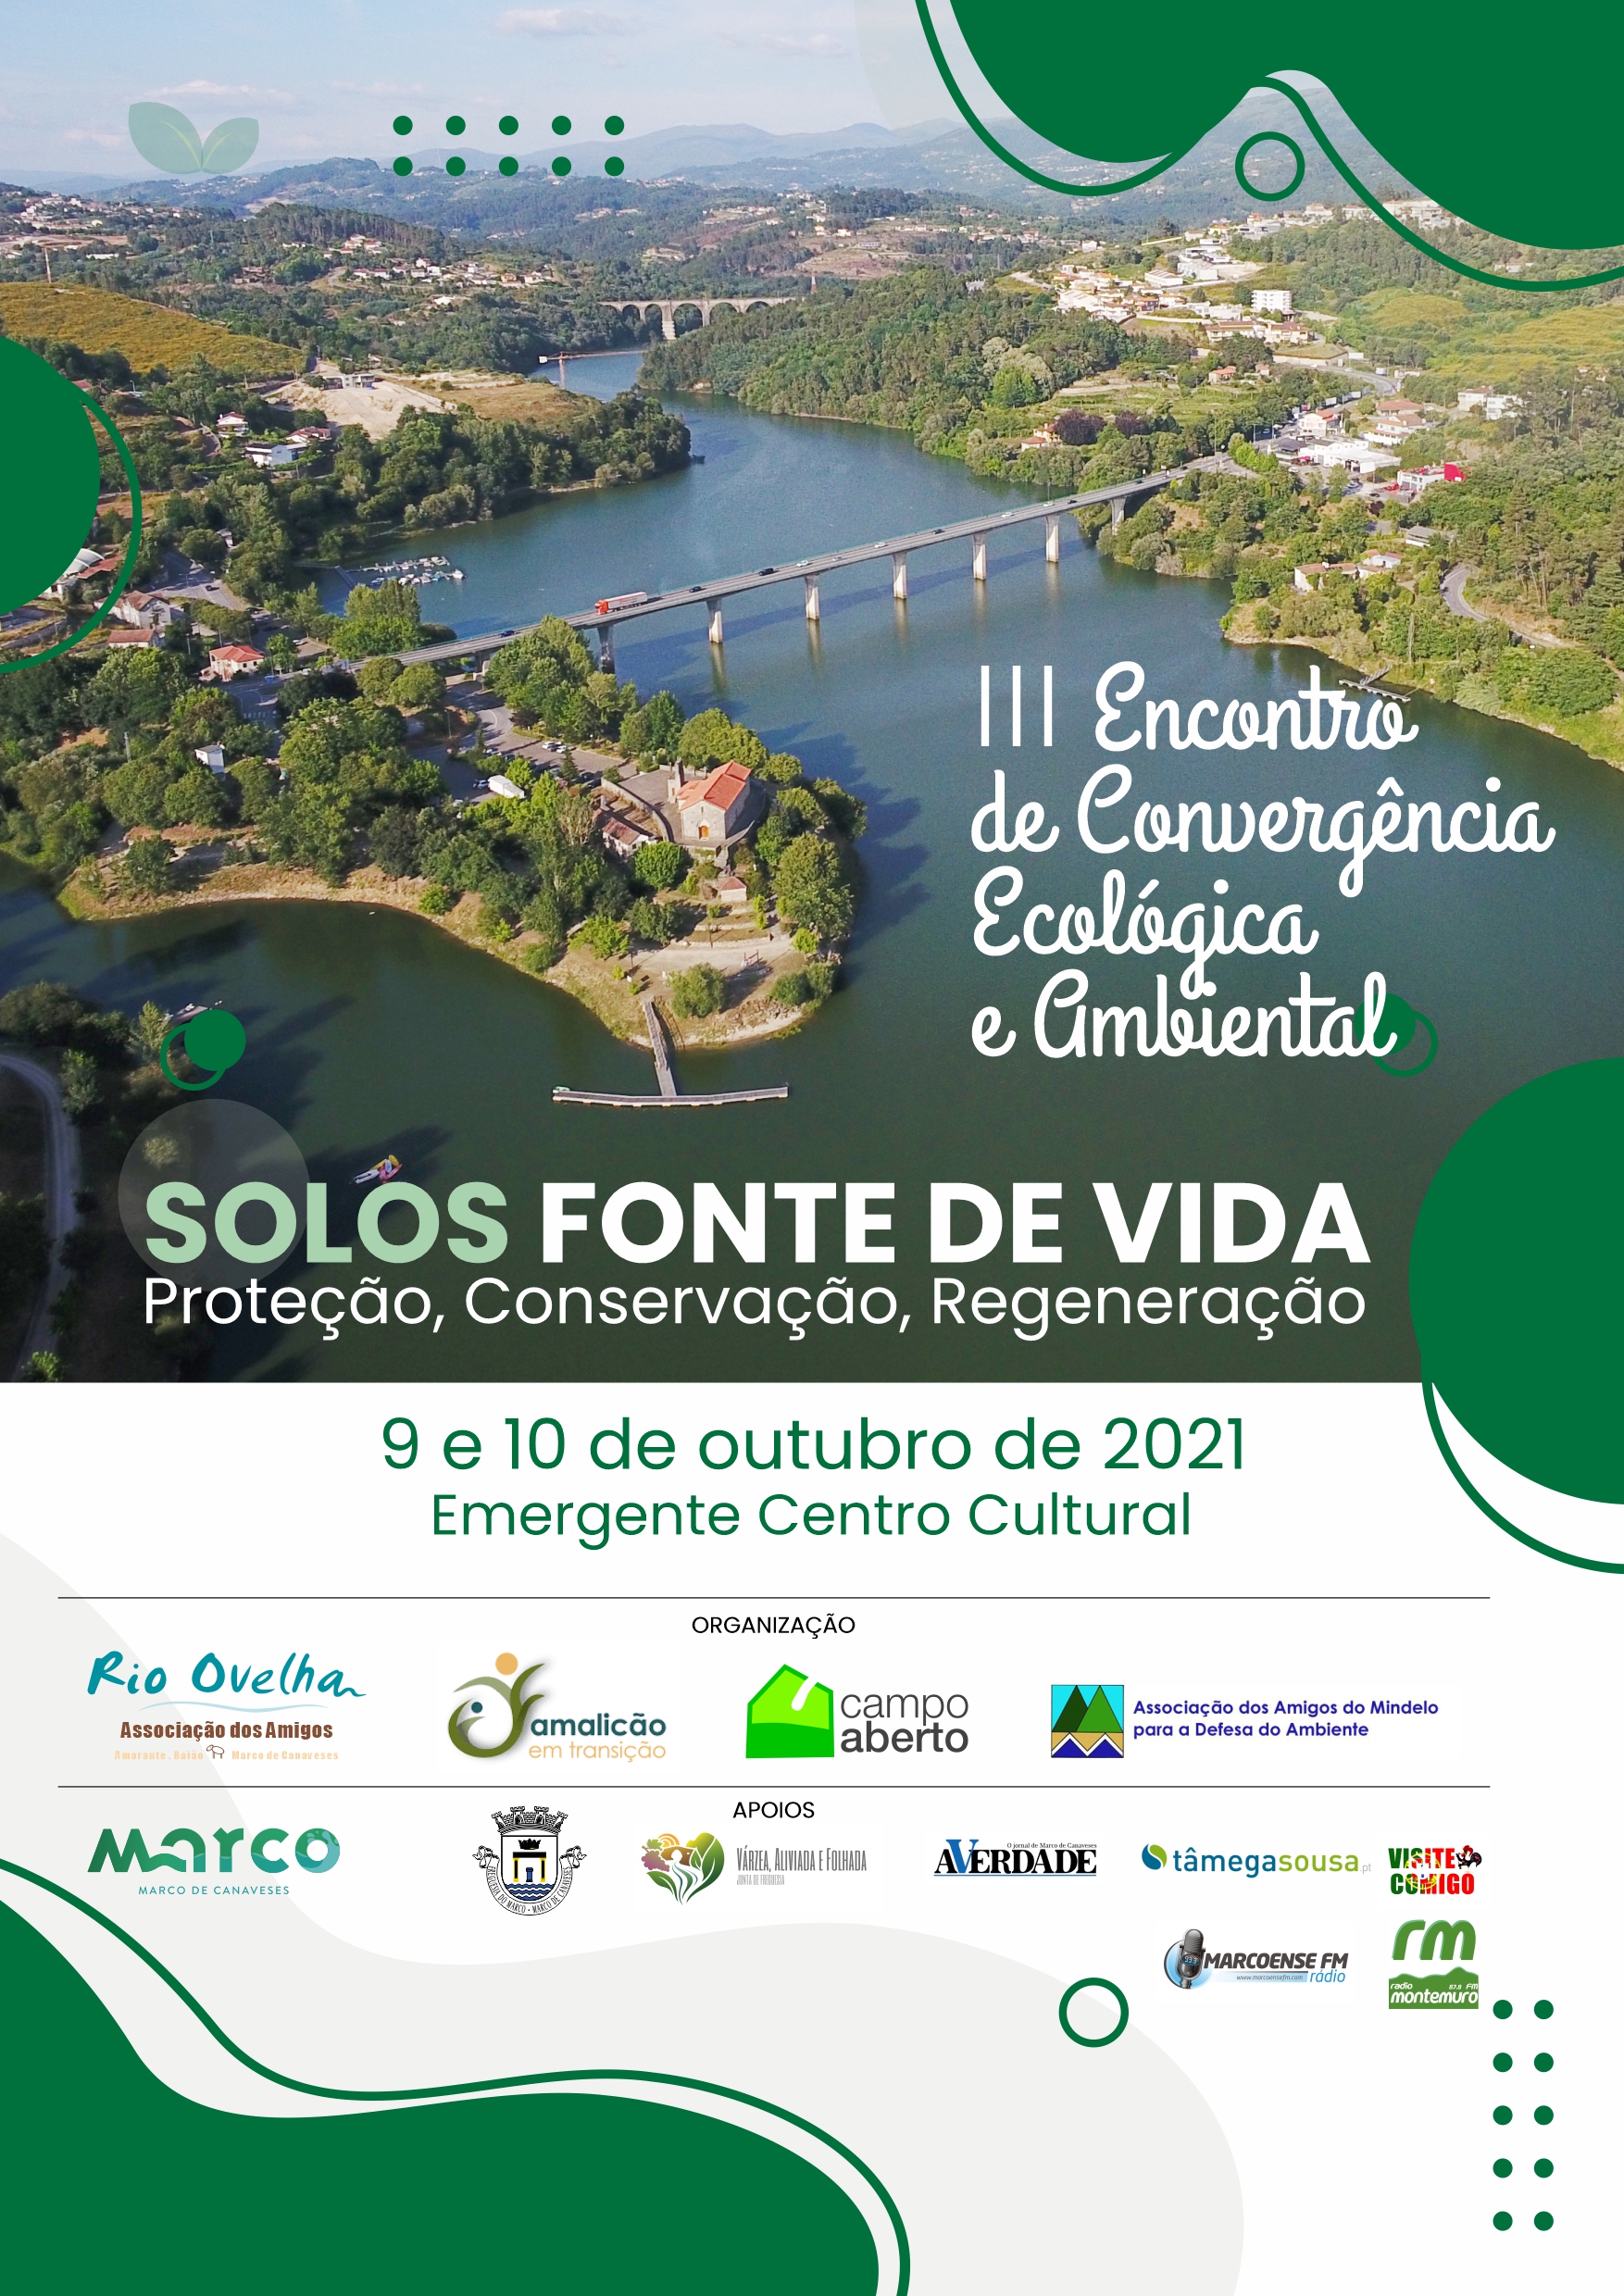 III Encontro de Convergência Ecológica e Ambiental, Emergente Centro Cultural, Marco de Canaveses